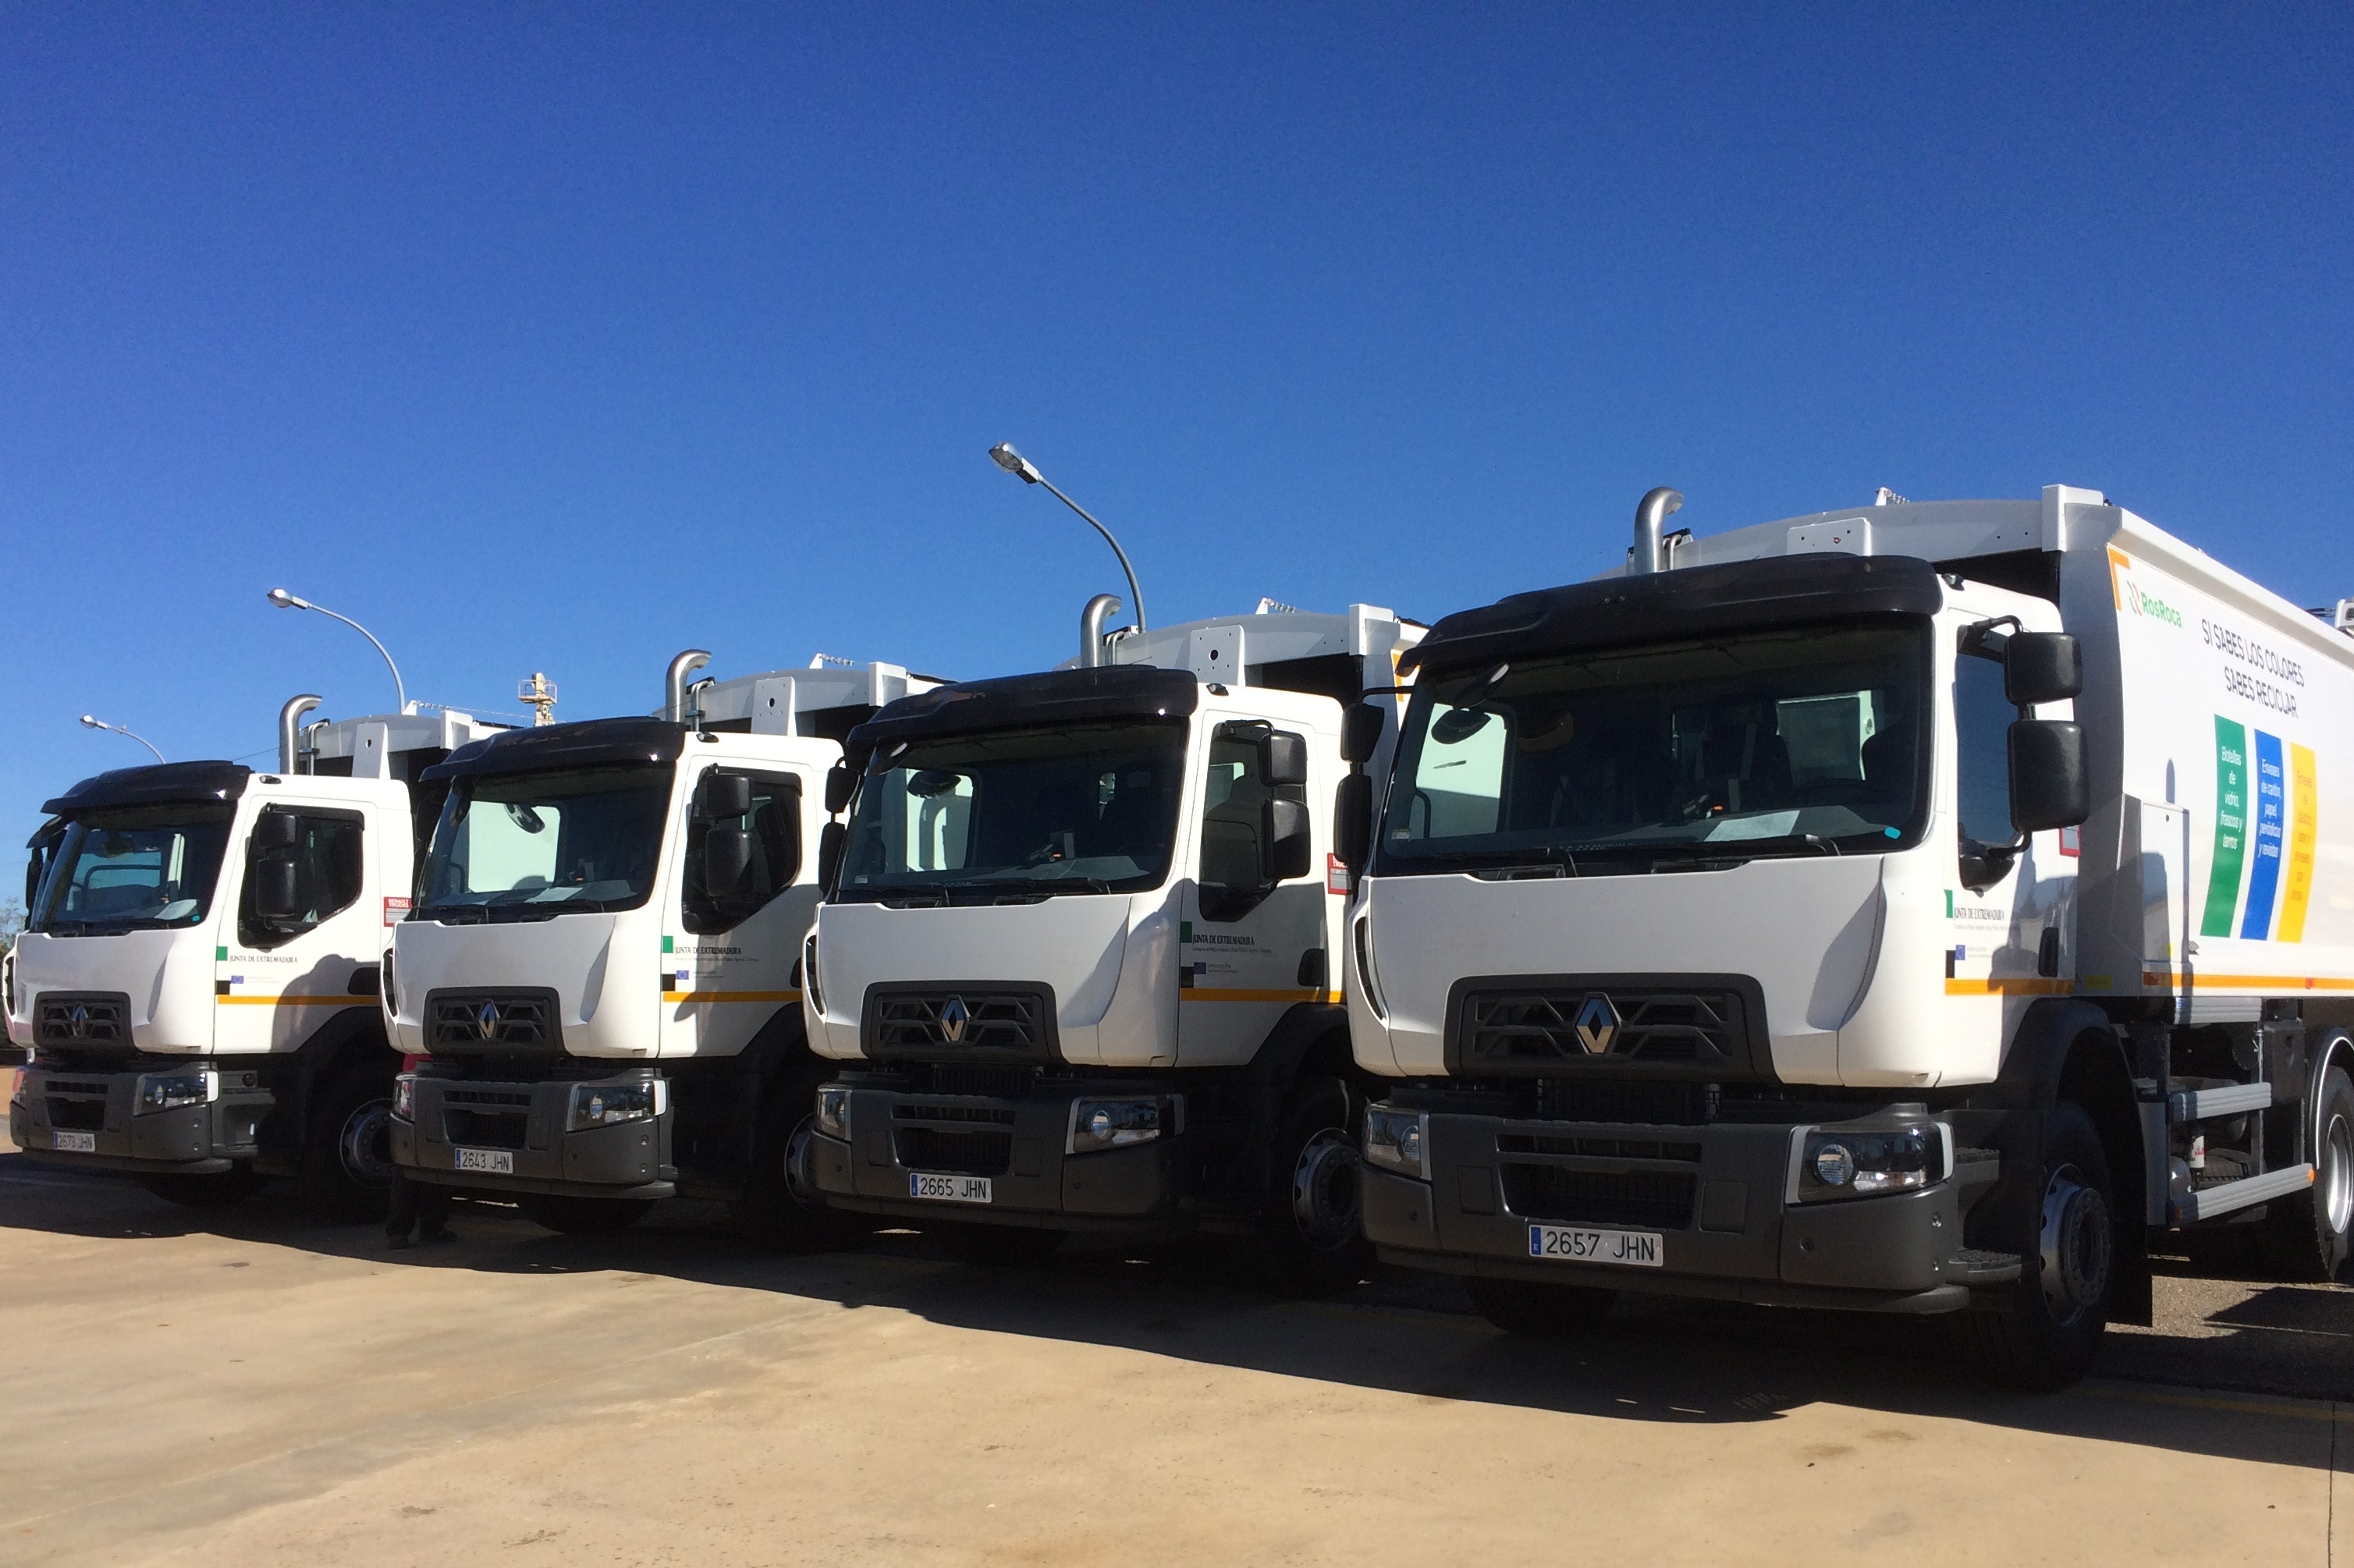 Los cuatro vehículos de la gama C de Renault Trucks tienen una carga útil de 20 toneladas.